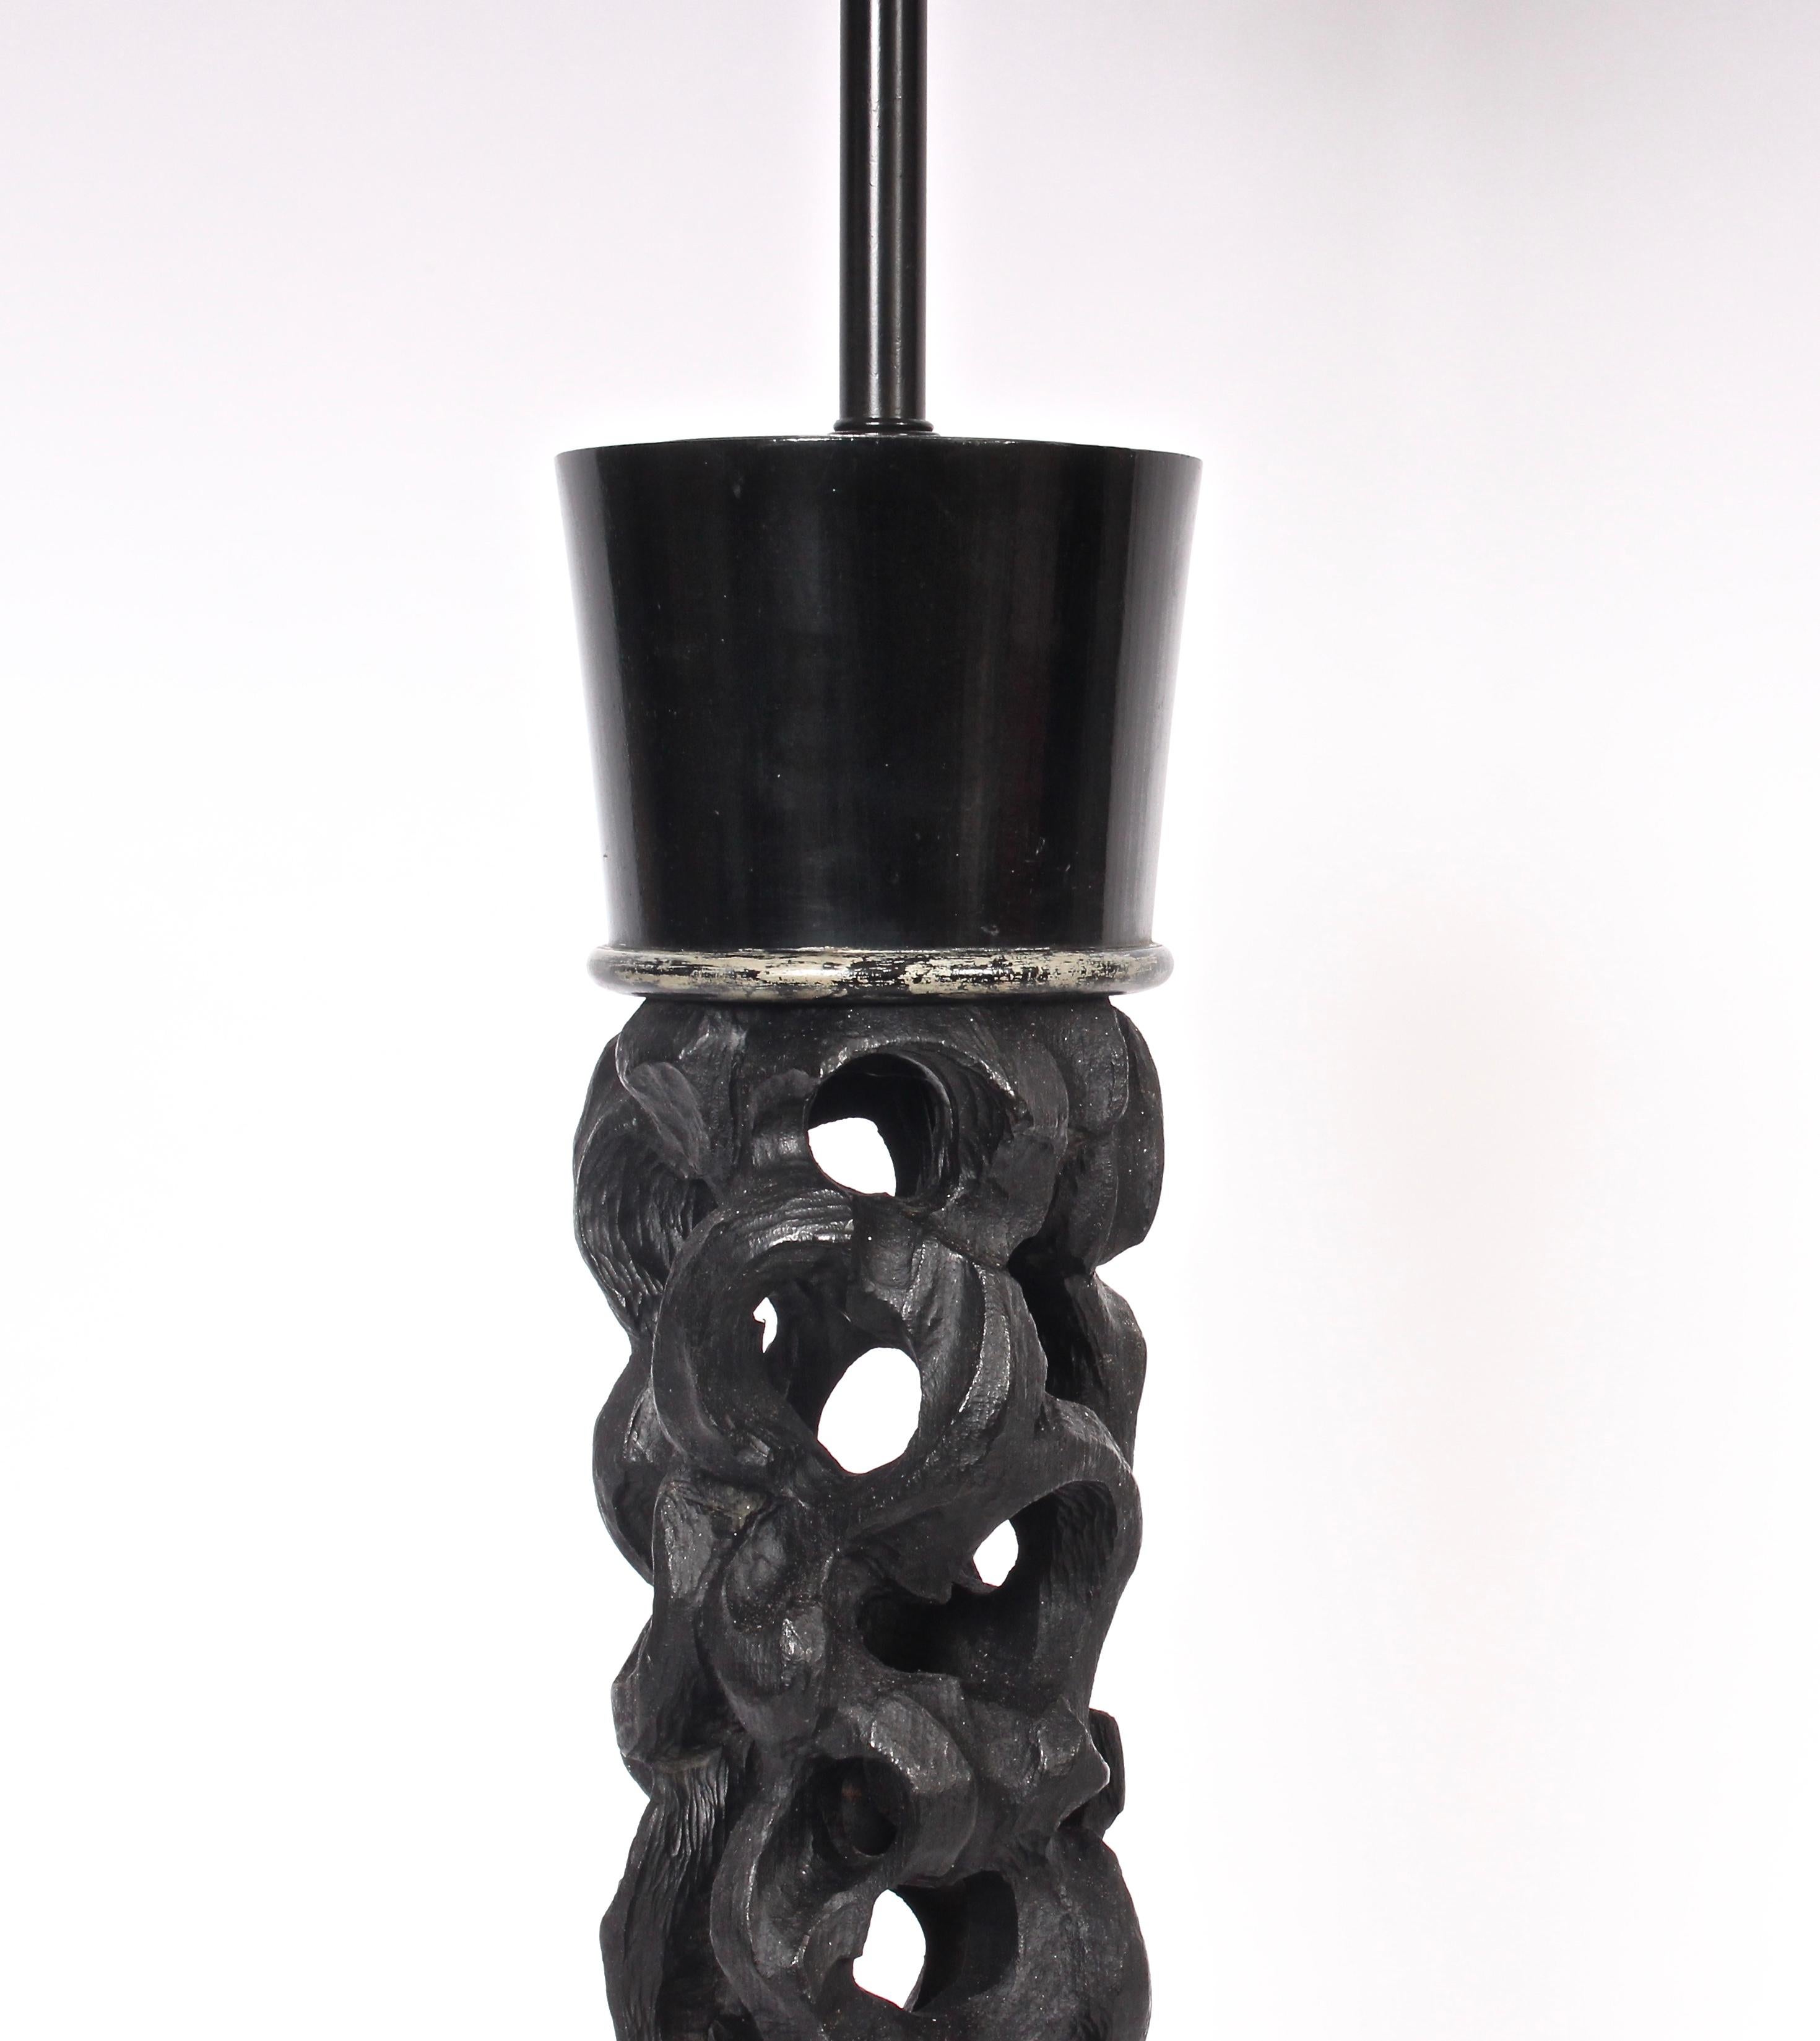 Substantial James Mont Pierced Column Ebonized Wood Table Lamp, C. 1950 For Sale 2